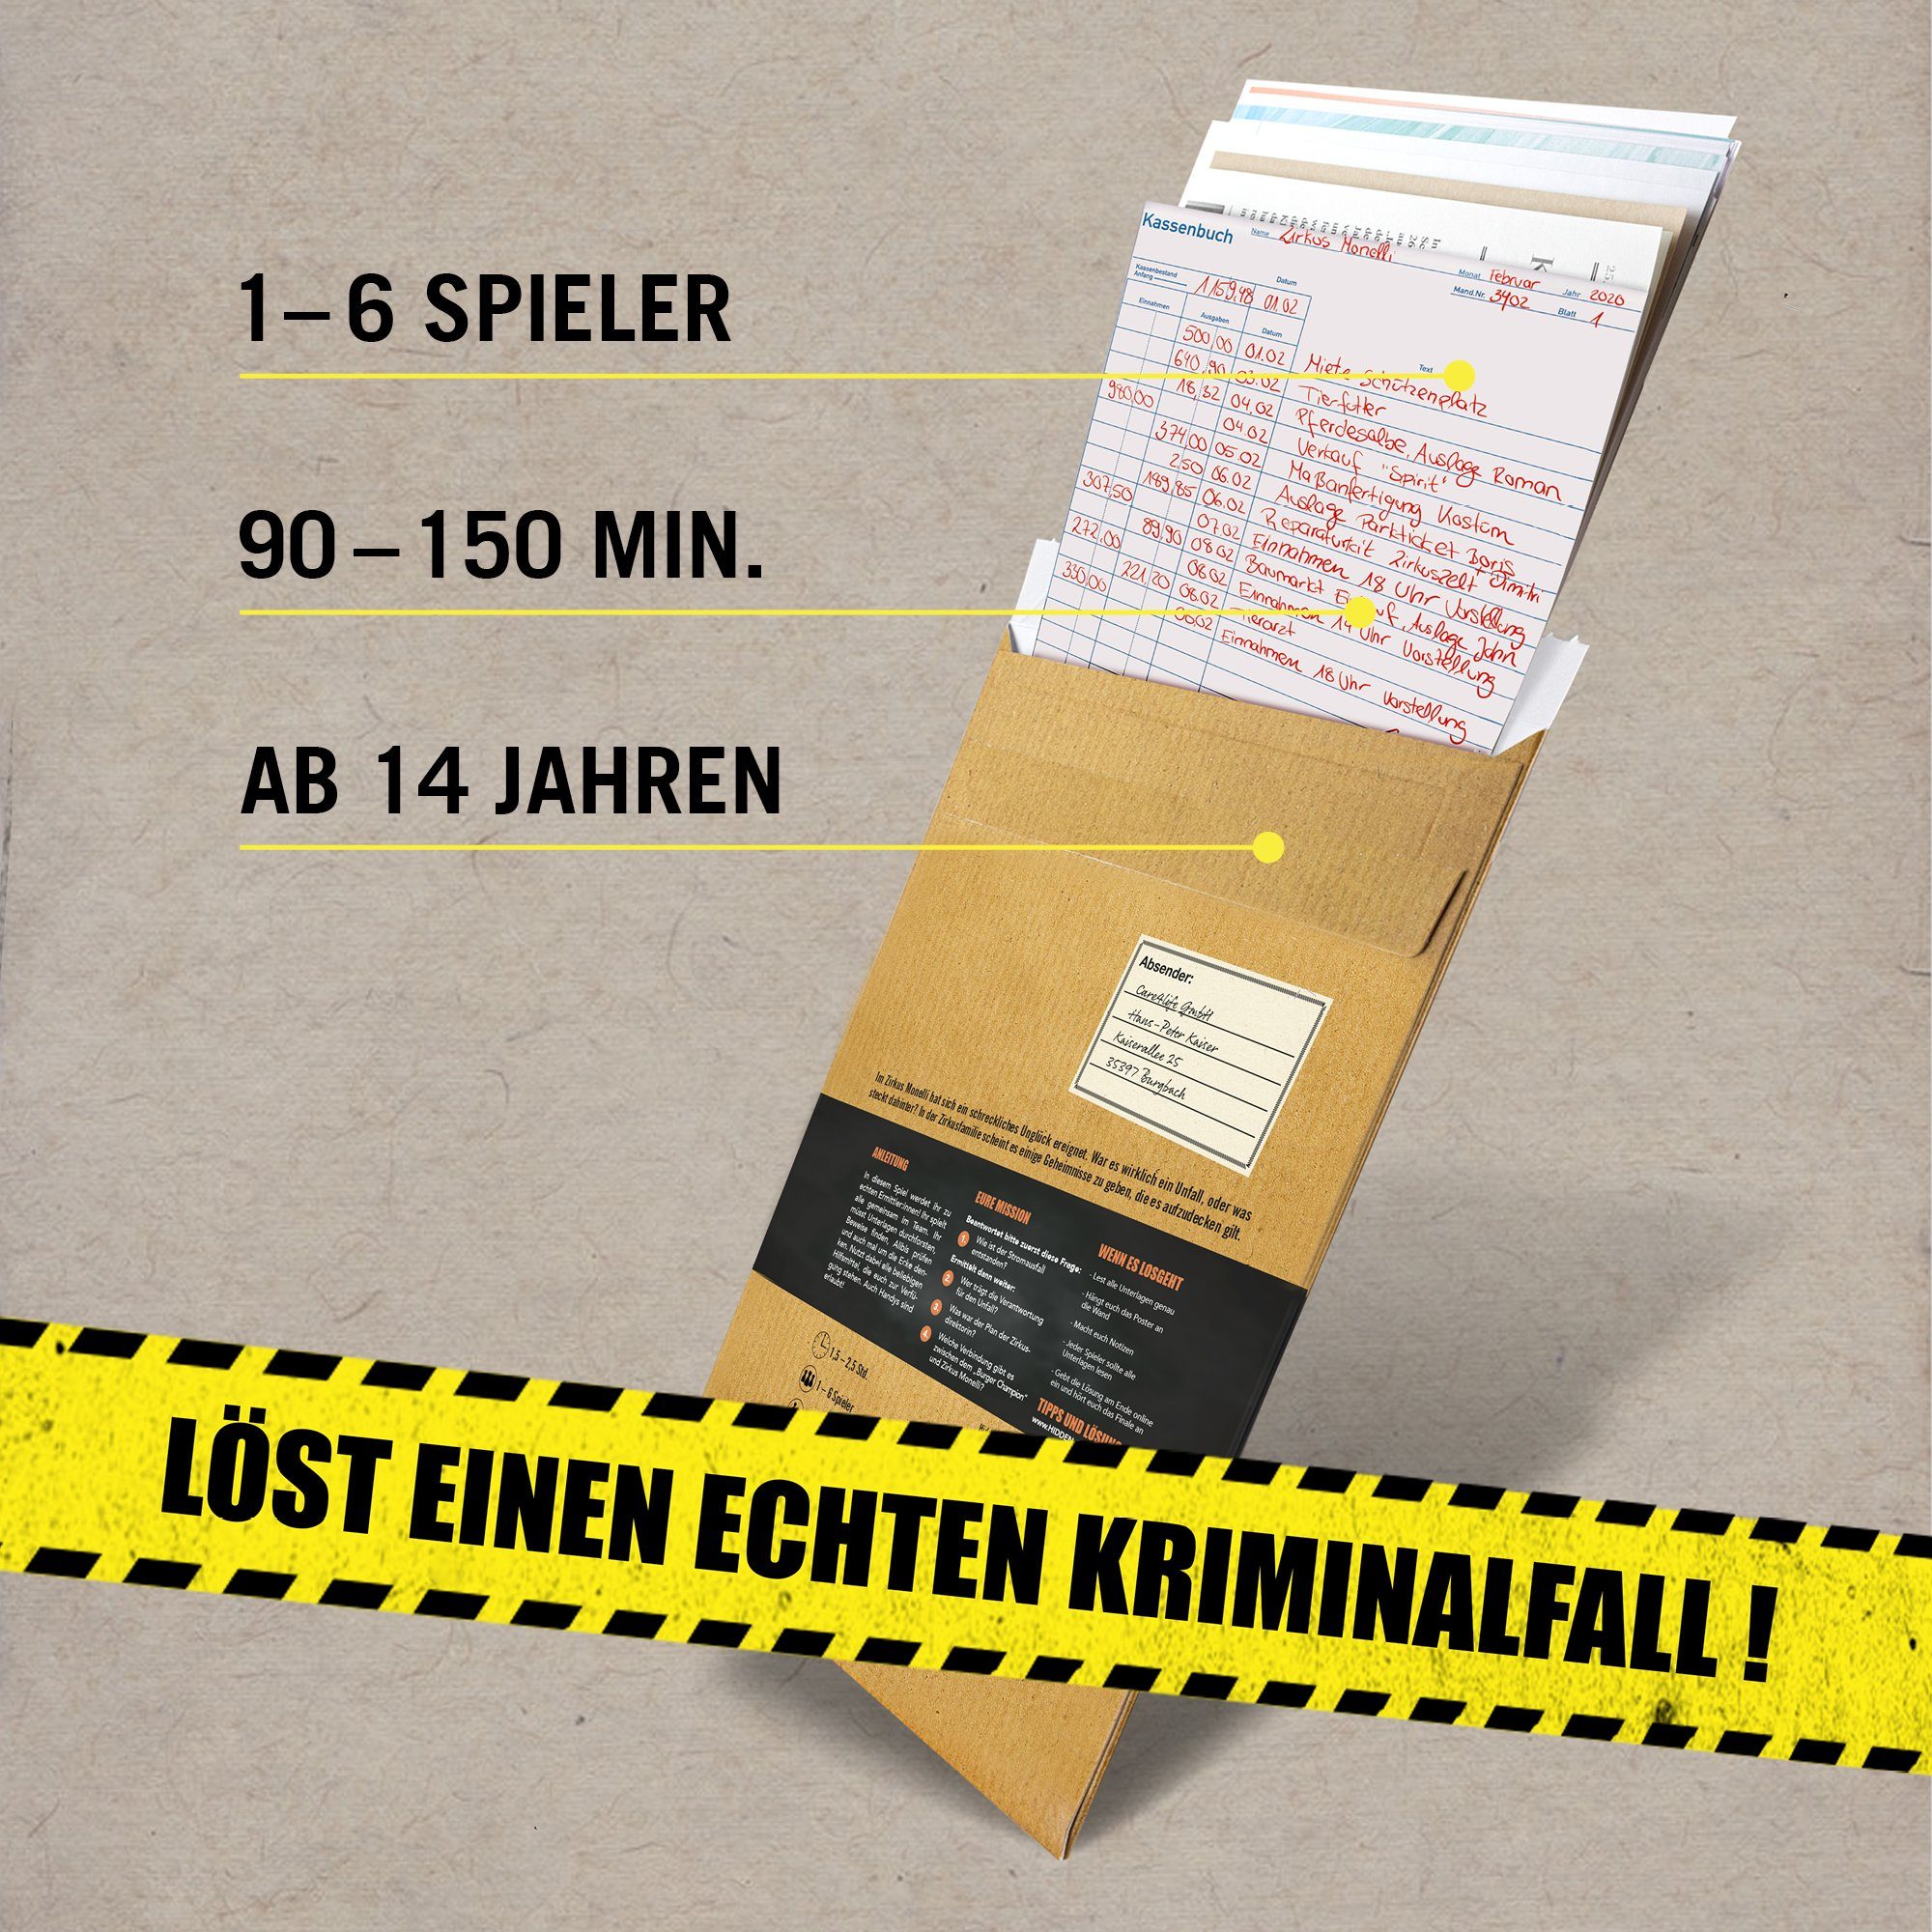 Hidden Games Made Krimispiel Germany Der Fall in Spiel, Ein - Drahtseilakt, Tatort 4